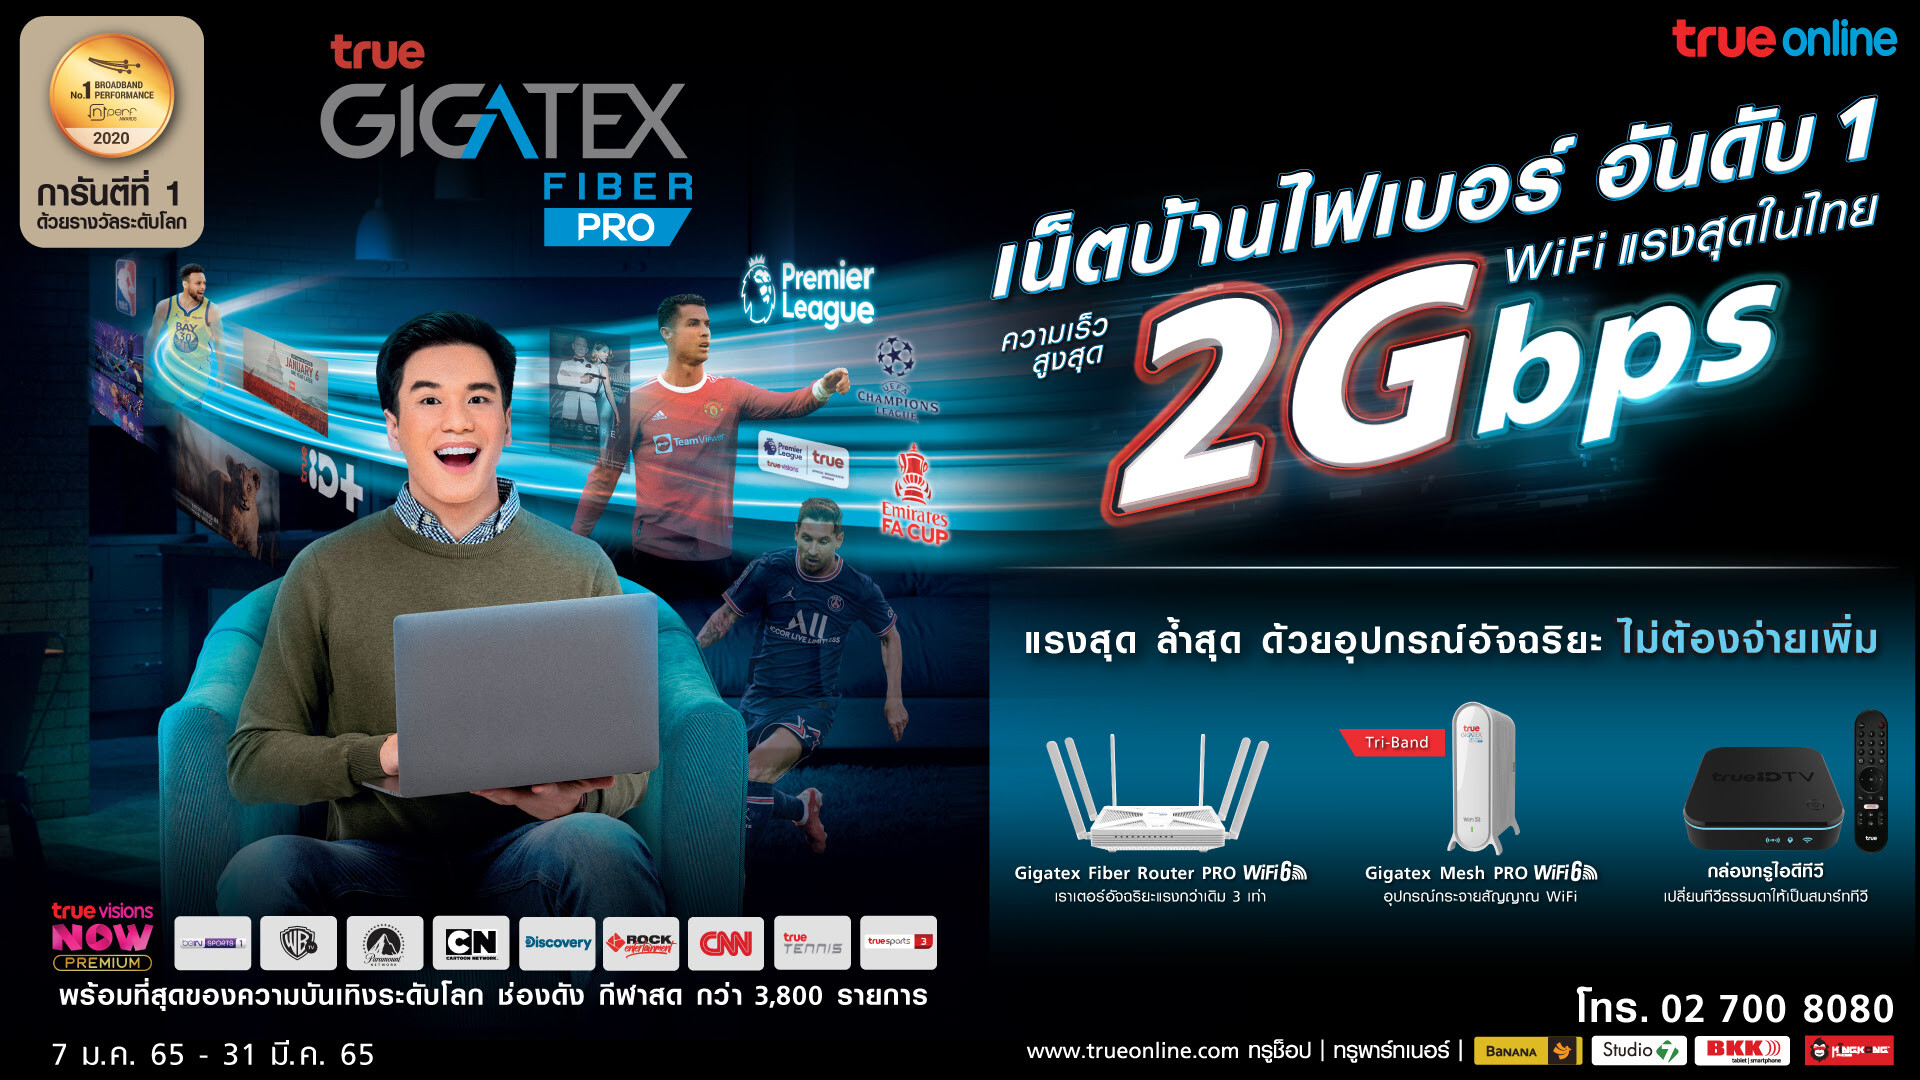 ย้ำผู้นำเน็ตบ้านไฟเบอร์อันดับ 1 การันตีด้วยรางวัลระดับโลก nPerf พร้อมให้บริการครบวงจร…ทรูออนไลน์ ส่งแพ็กเกจ  "ทรู กิกะเทค ไฟเบอร์ 2 Gbps" ชู WiFi แรงสุดในไทย